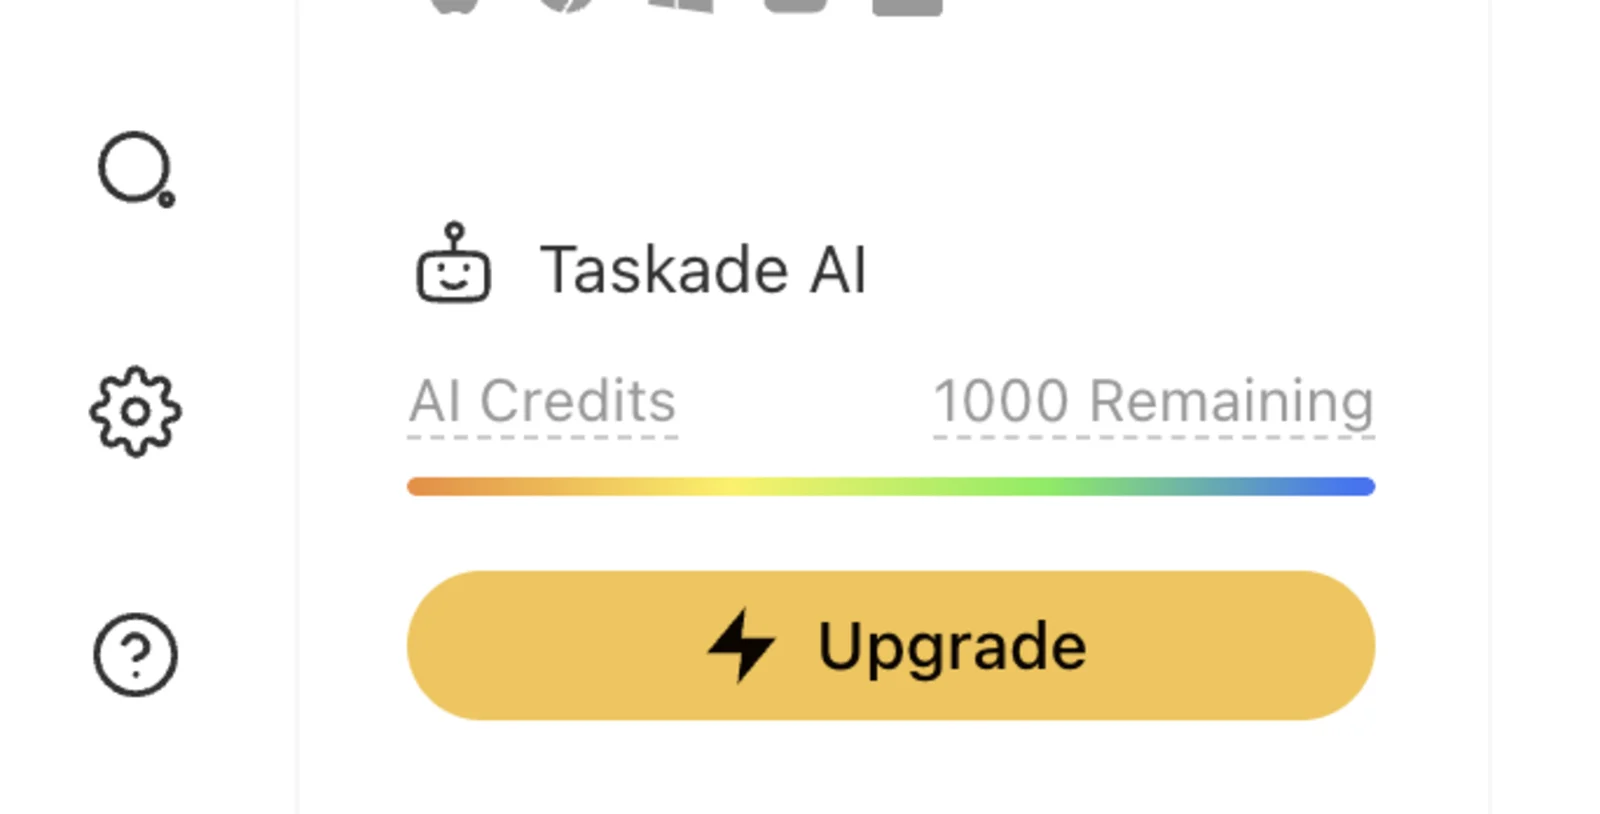 Taskade AI Credits